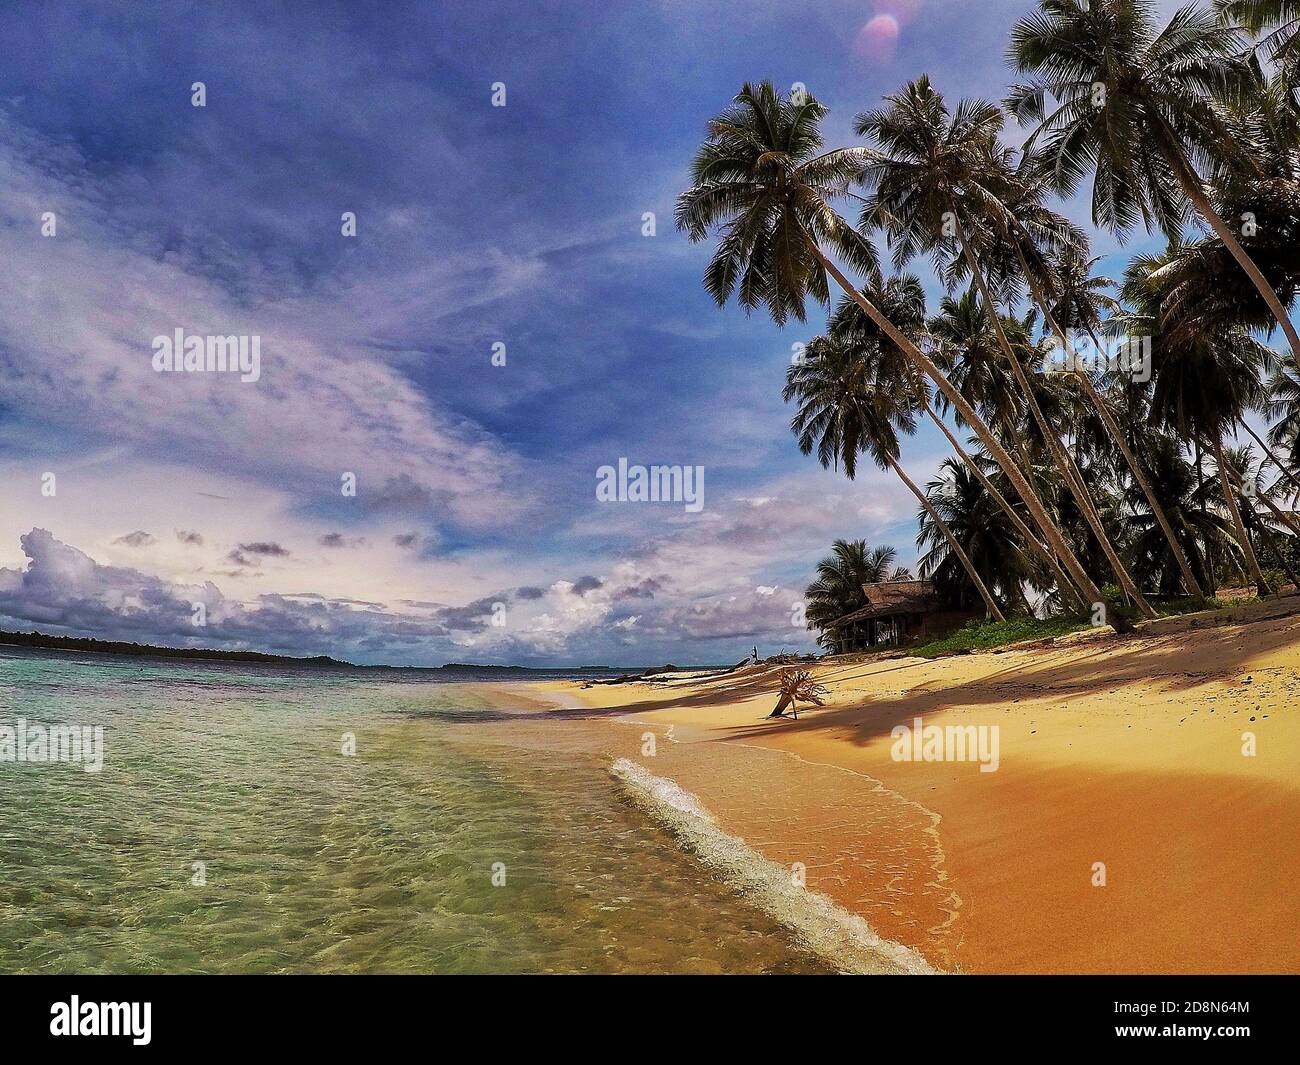 Playa de arena rubia con palmeras Foto de stock